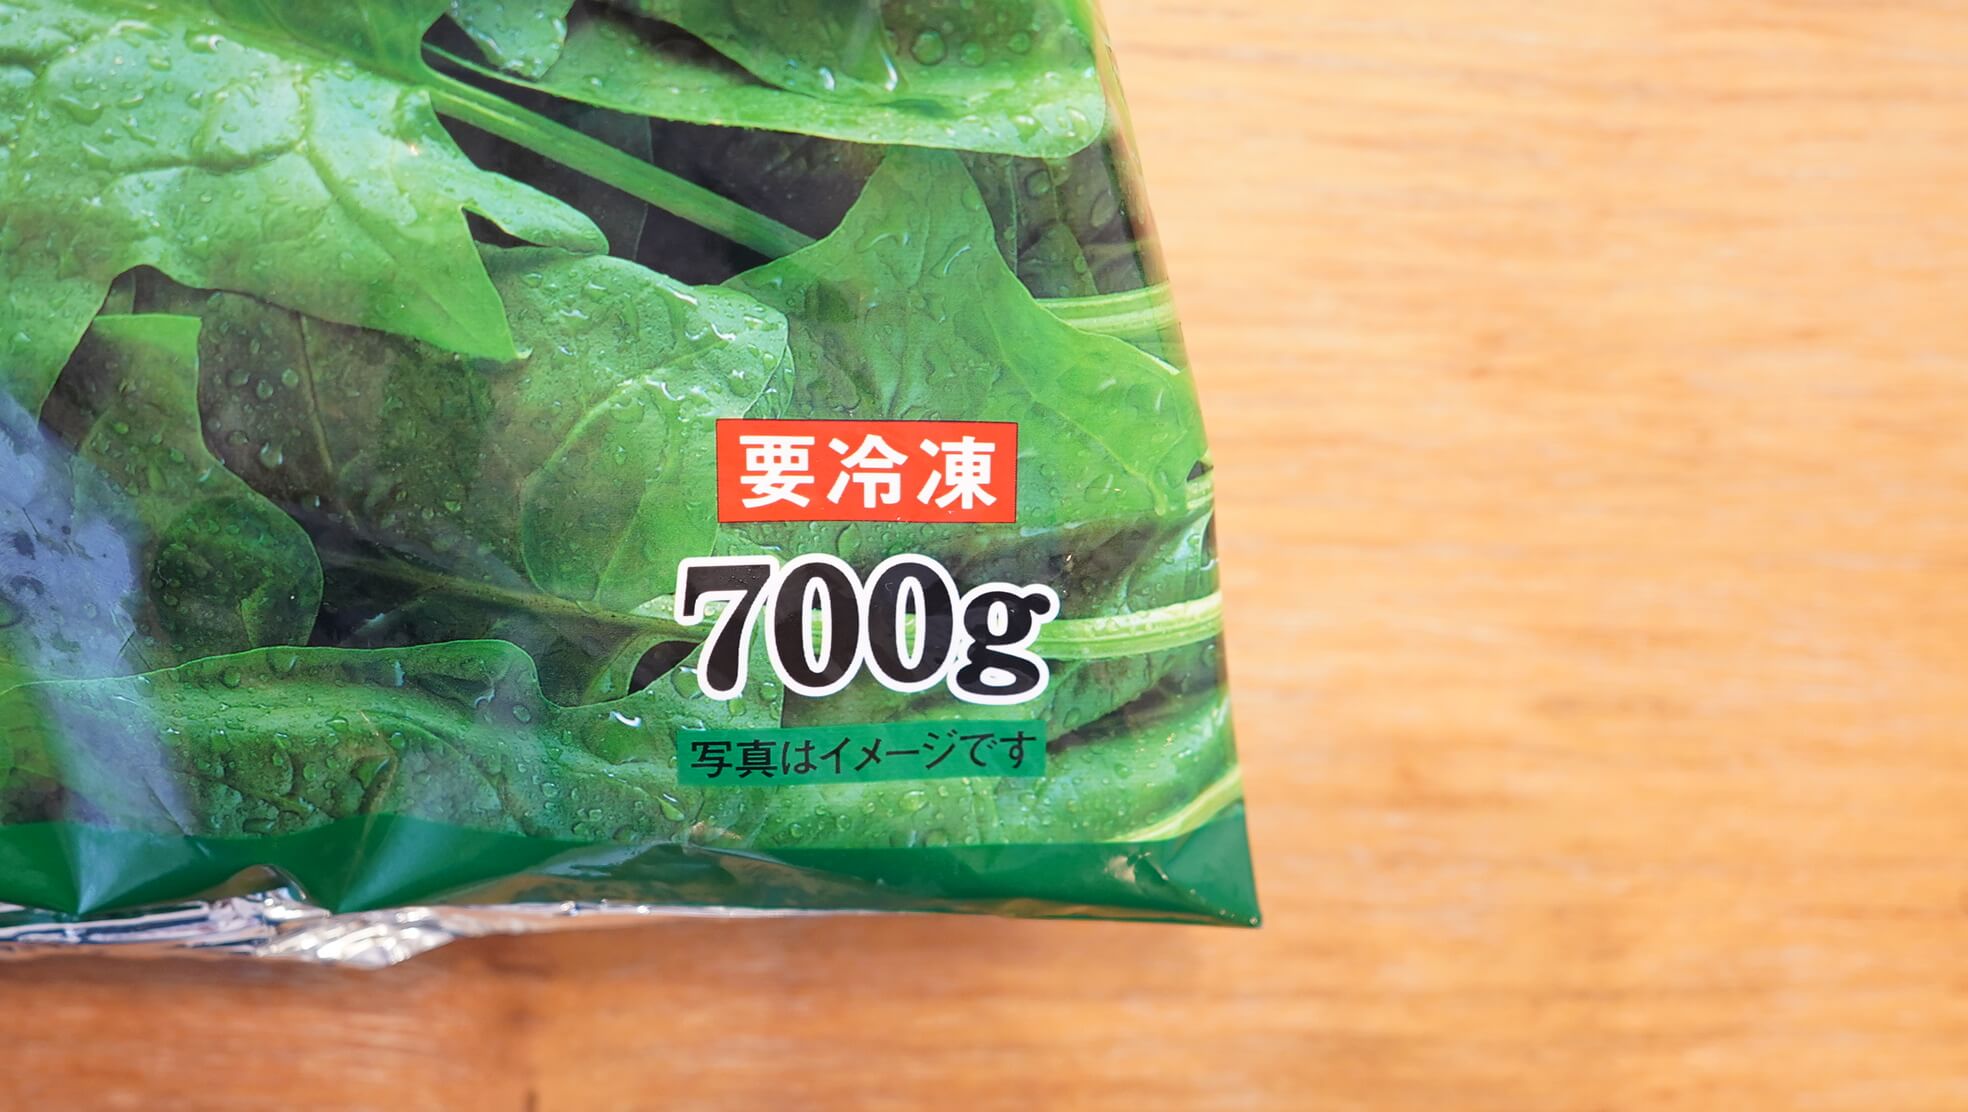 コストコの冷凍食品ニチレイ「九州産のほうれん草です。」のパッケージ下段の写真